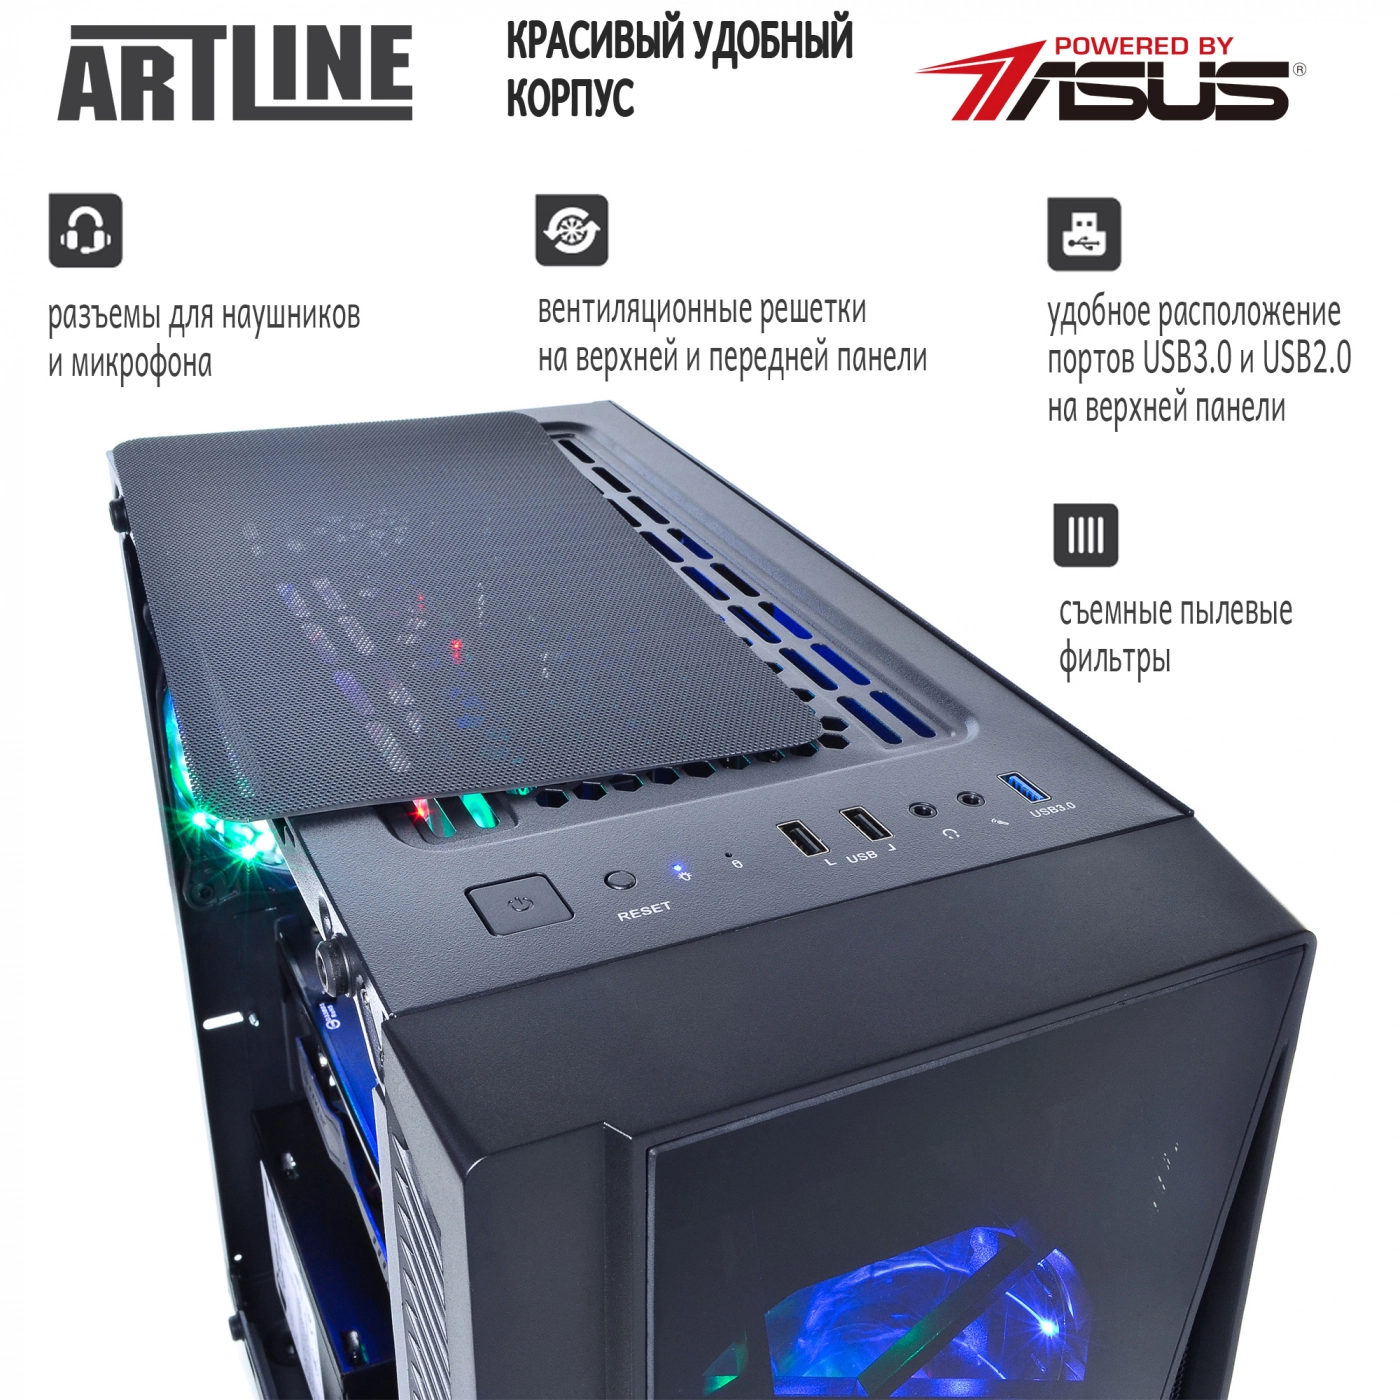 Купить Компьютер ARTLINE Gaming X38v10 - фото 3